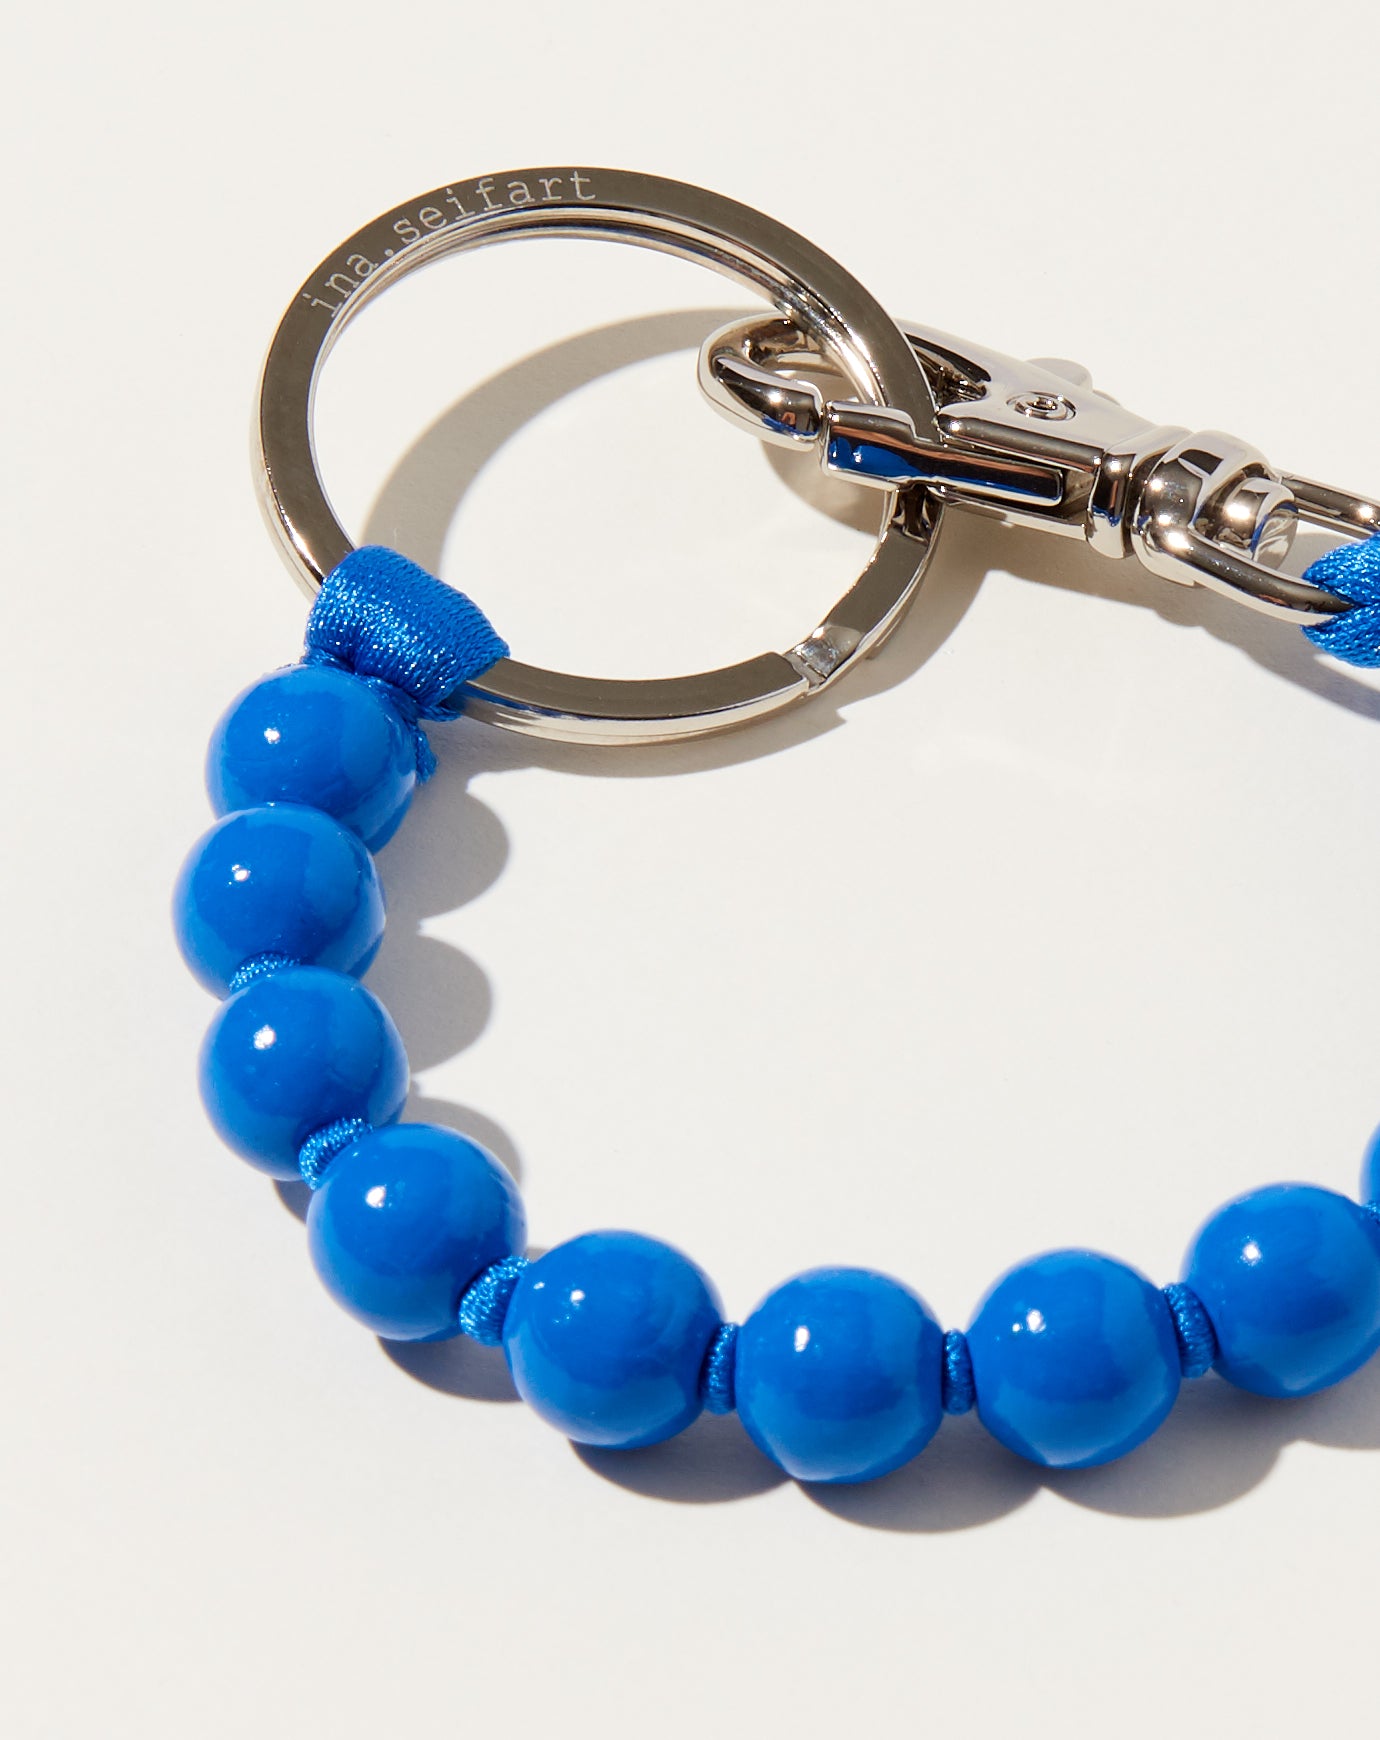 Ina Seifart Perlen Short Keyholder in Blue on Blue